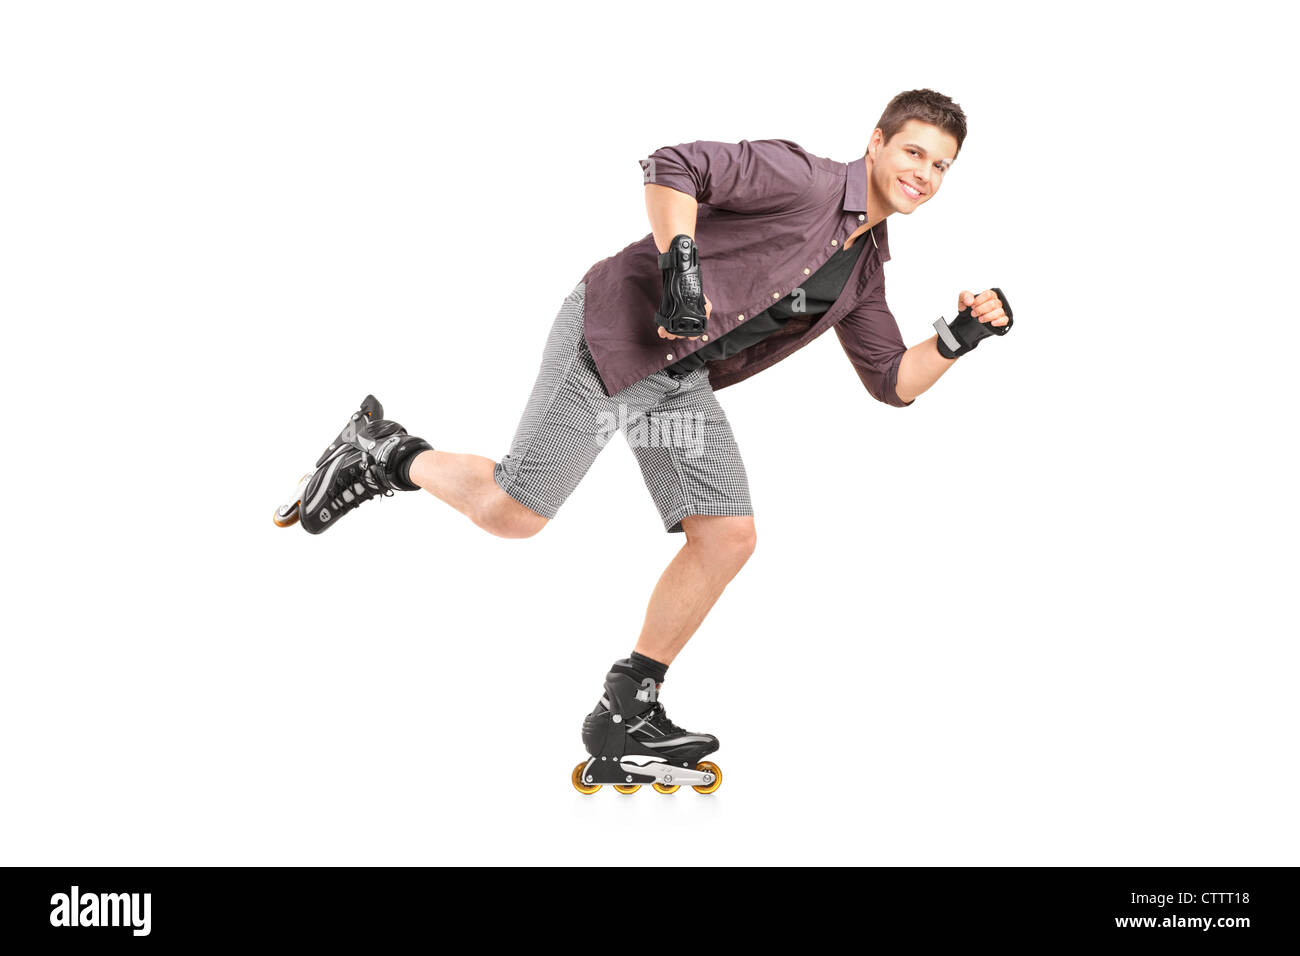 Man roller skating Banque d'images détourées - Alamy